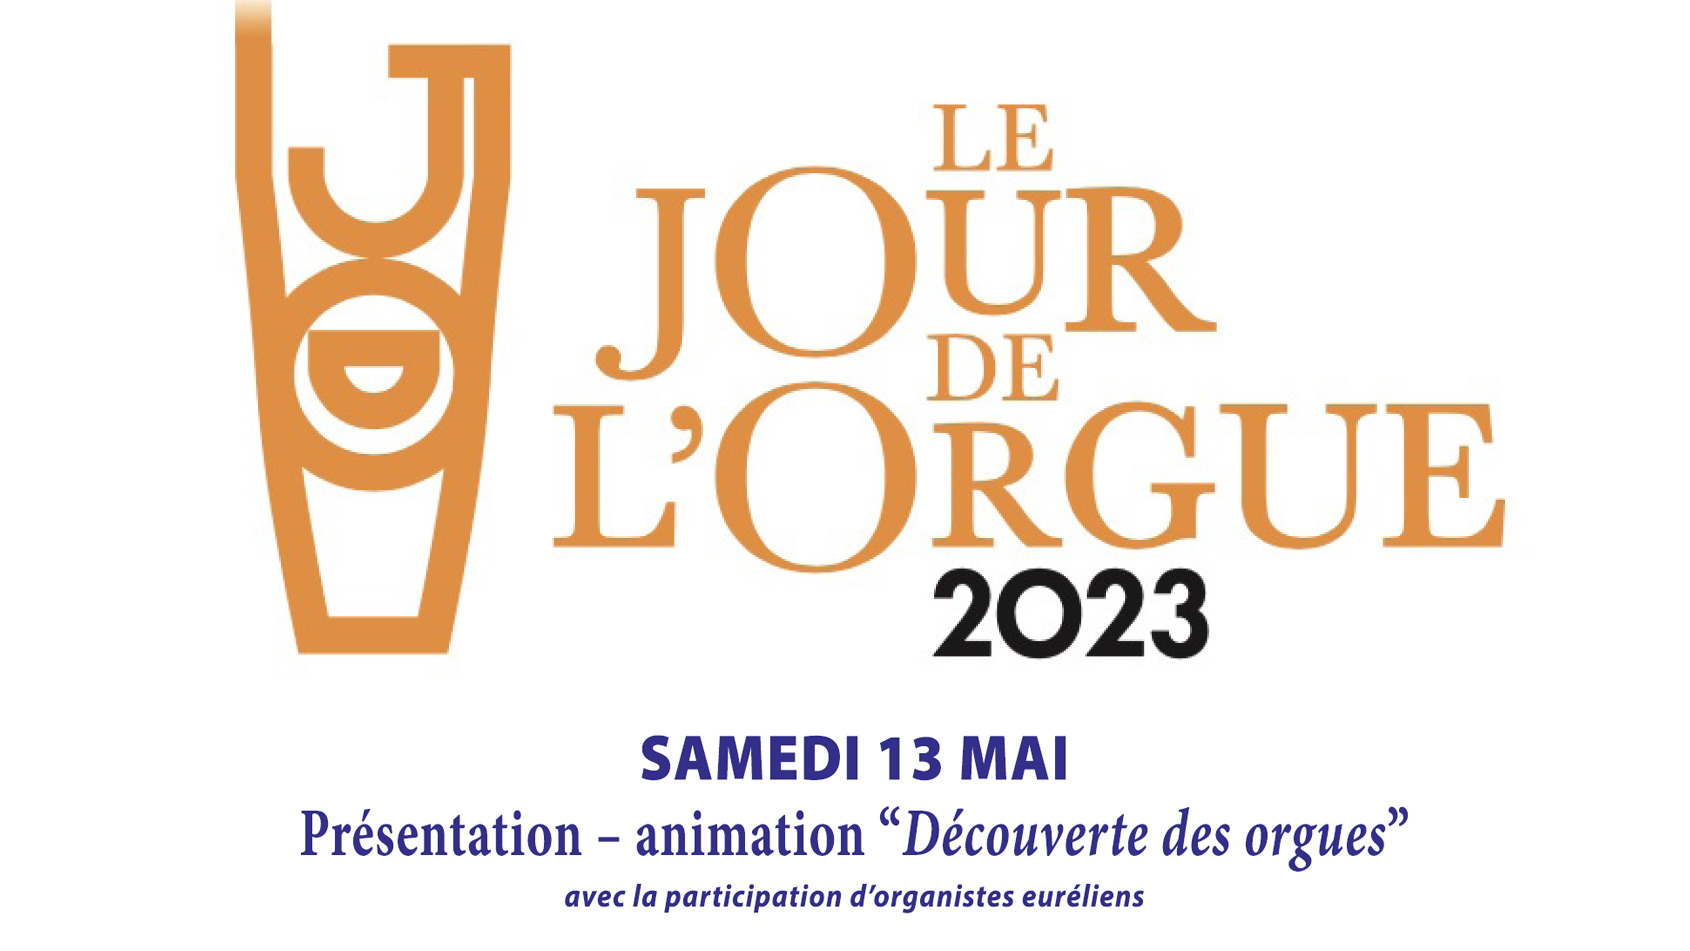 Jour de l'orgue - Chartres 2023